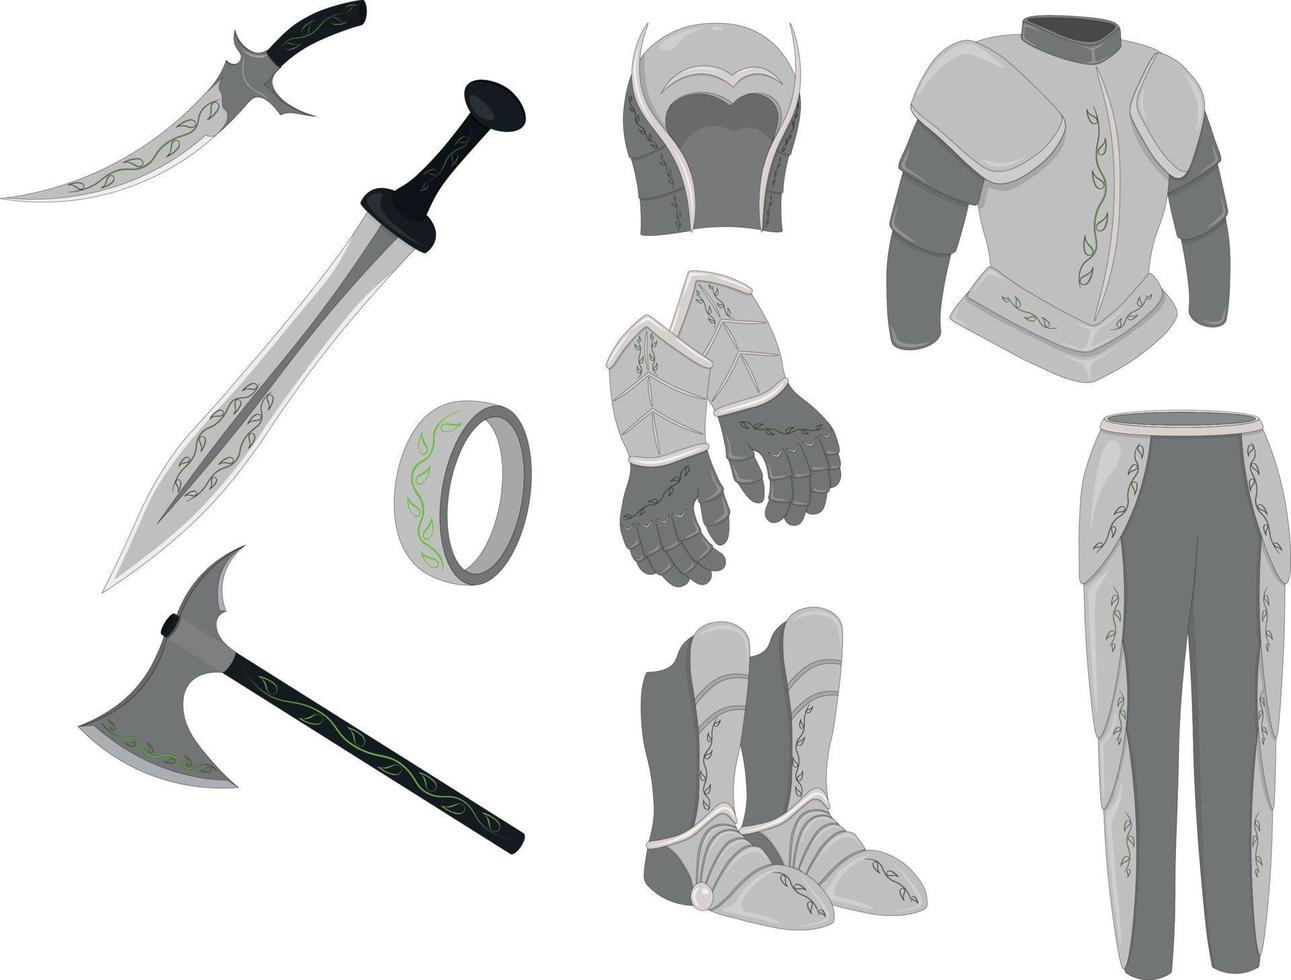 actif de jeu d'armes et d'armures, illustration vectorielle d'une collection d'armes et d'équipements d'armure de style vecteur